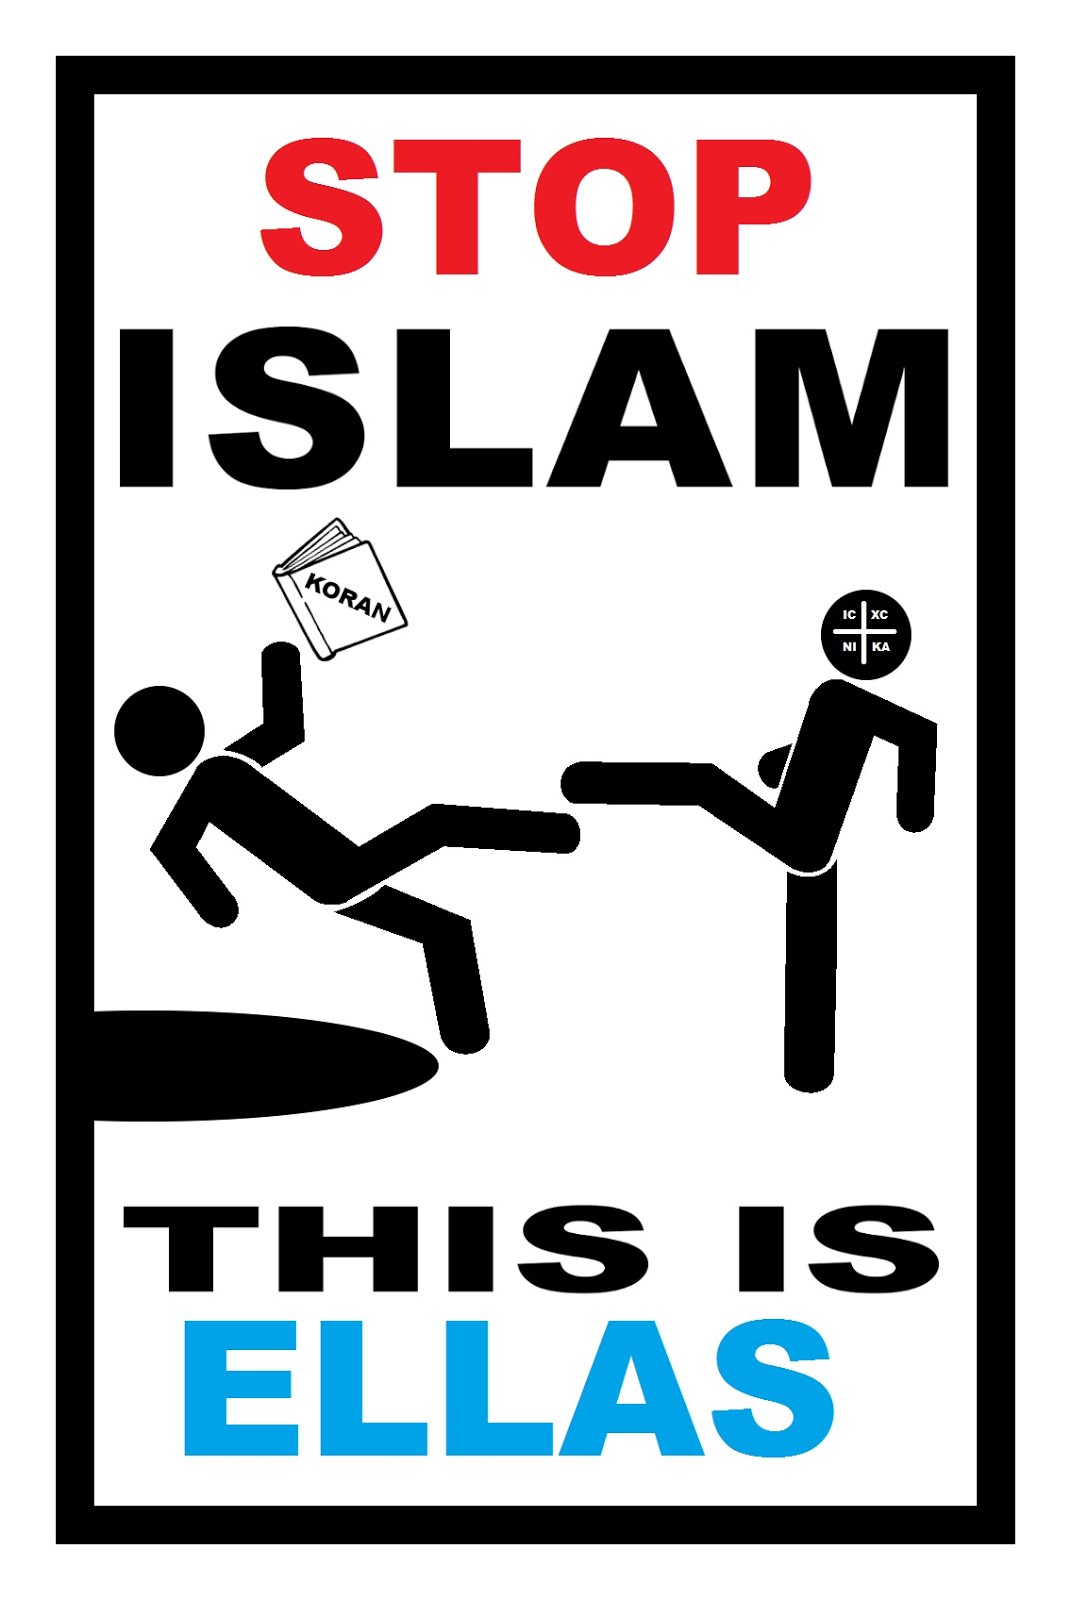 STOP ISLAM